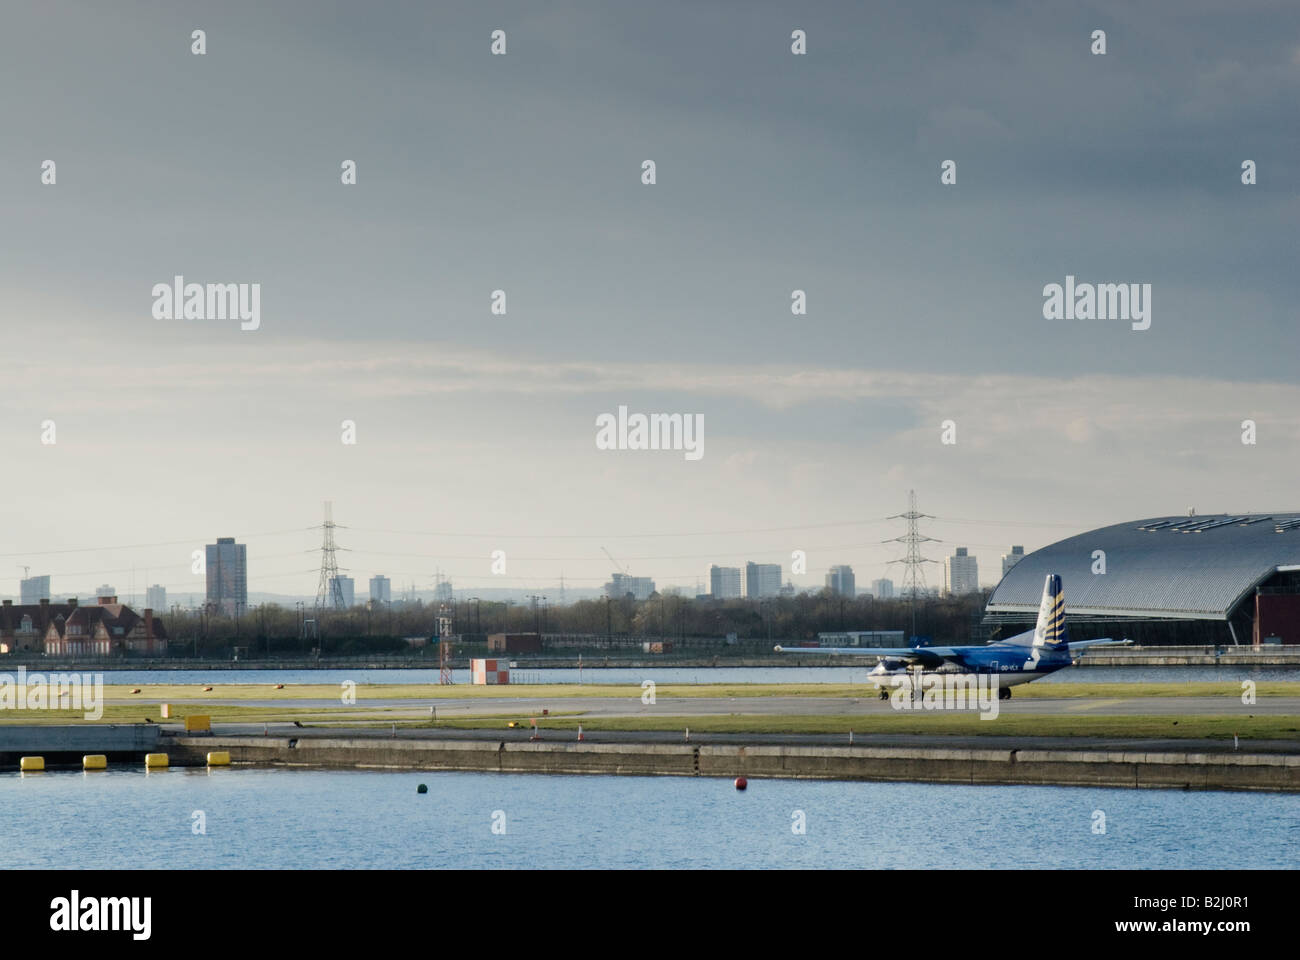 L'aéroport de London City, East London, UK Banque D'Images